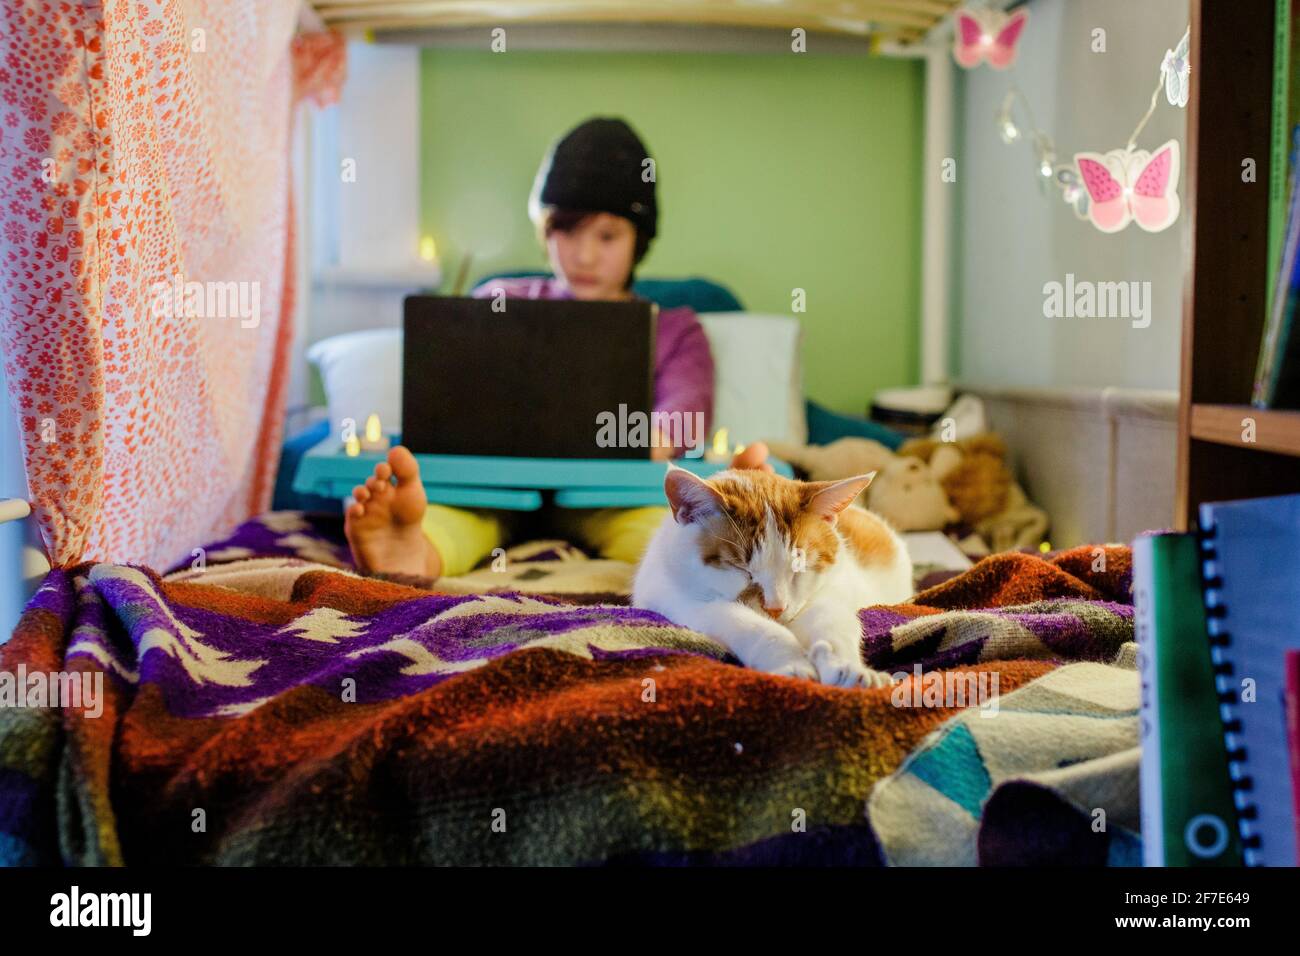 Un chat en premier plan s'étire sur le lit avec le garçon sur l'ordinateur à l'arrière Banque D'Images